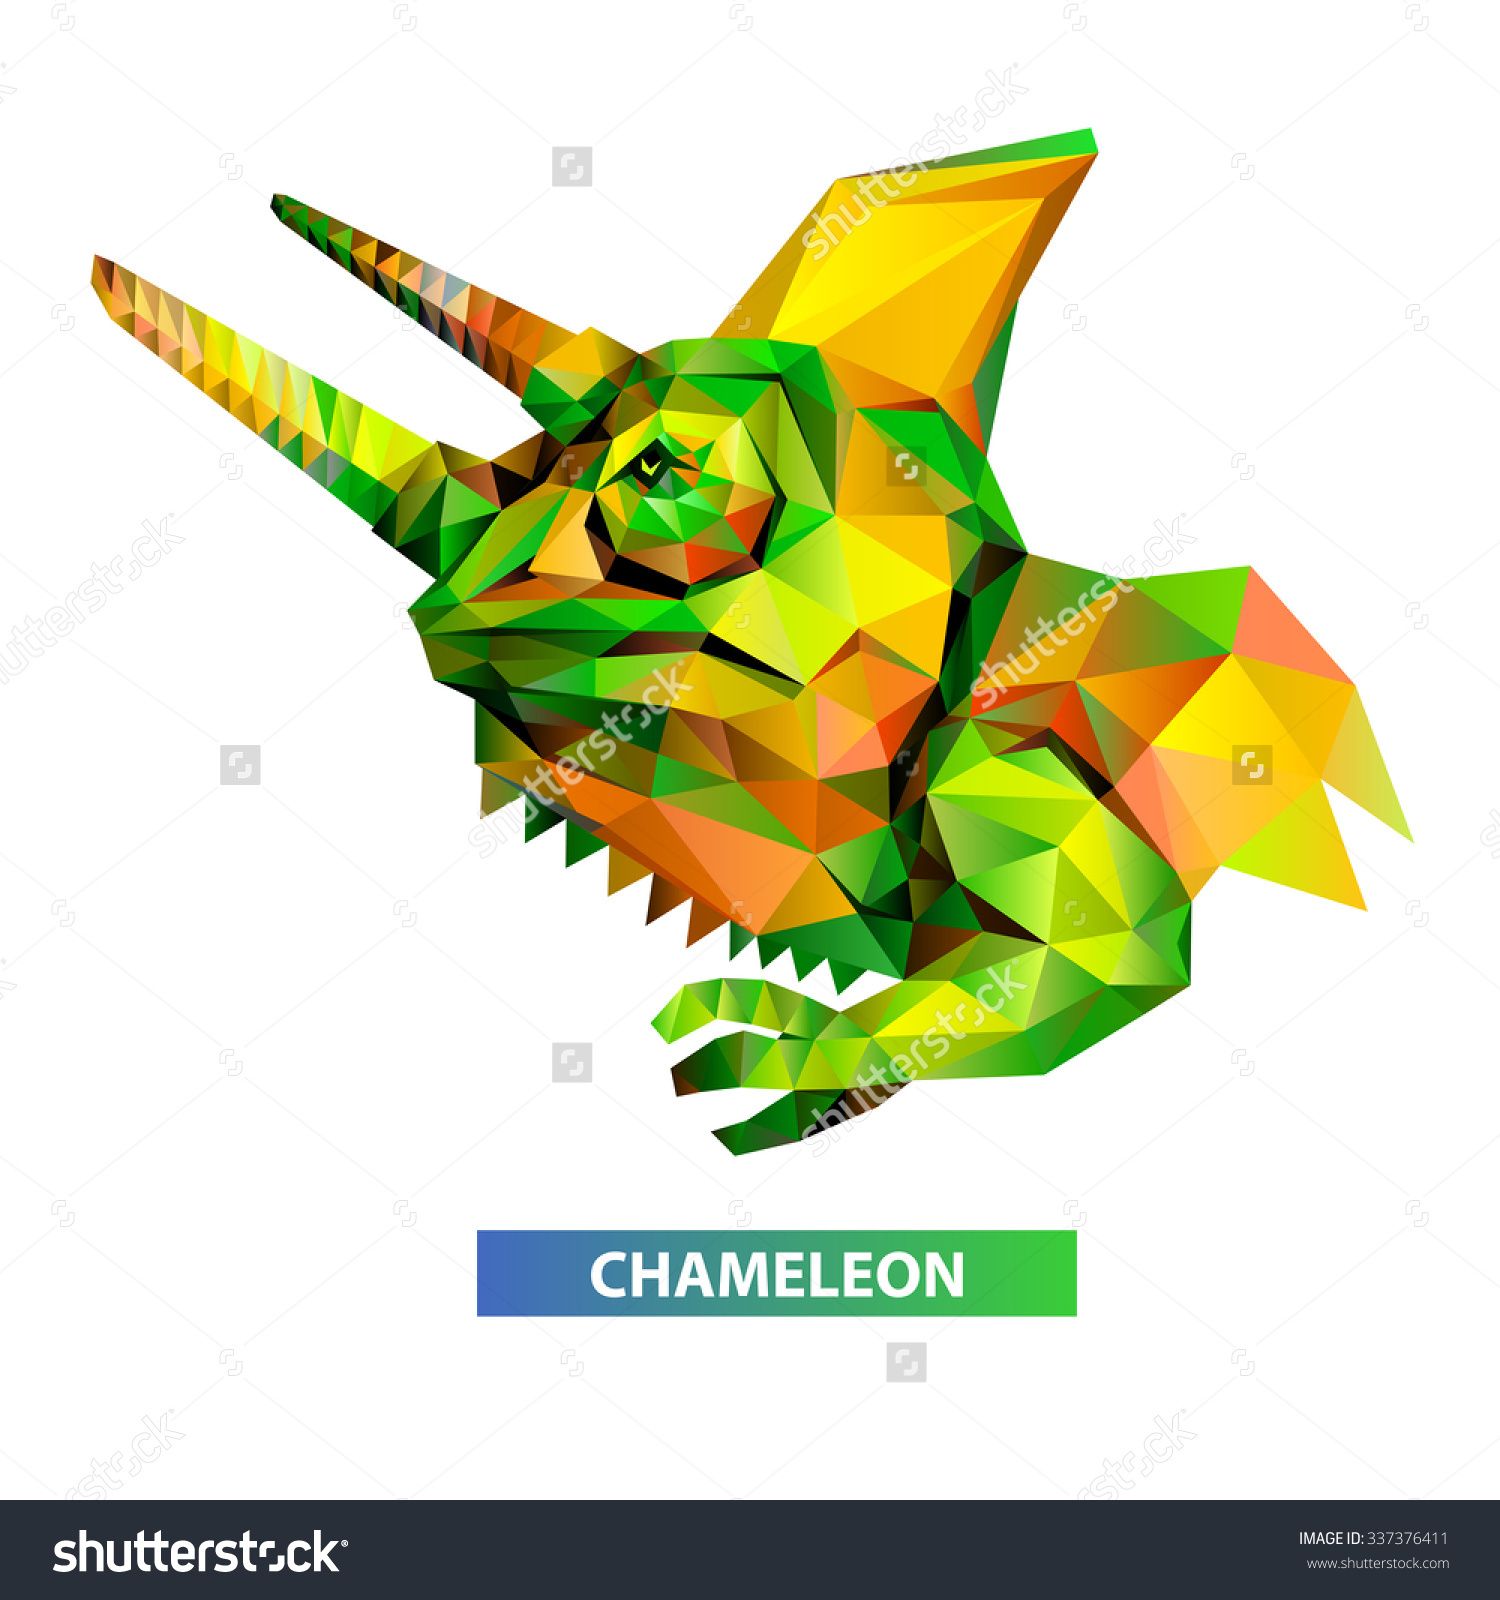 chameleon clipart head